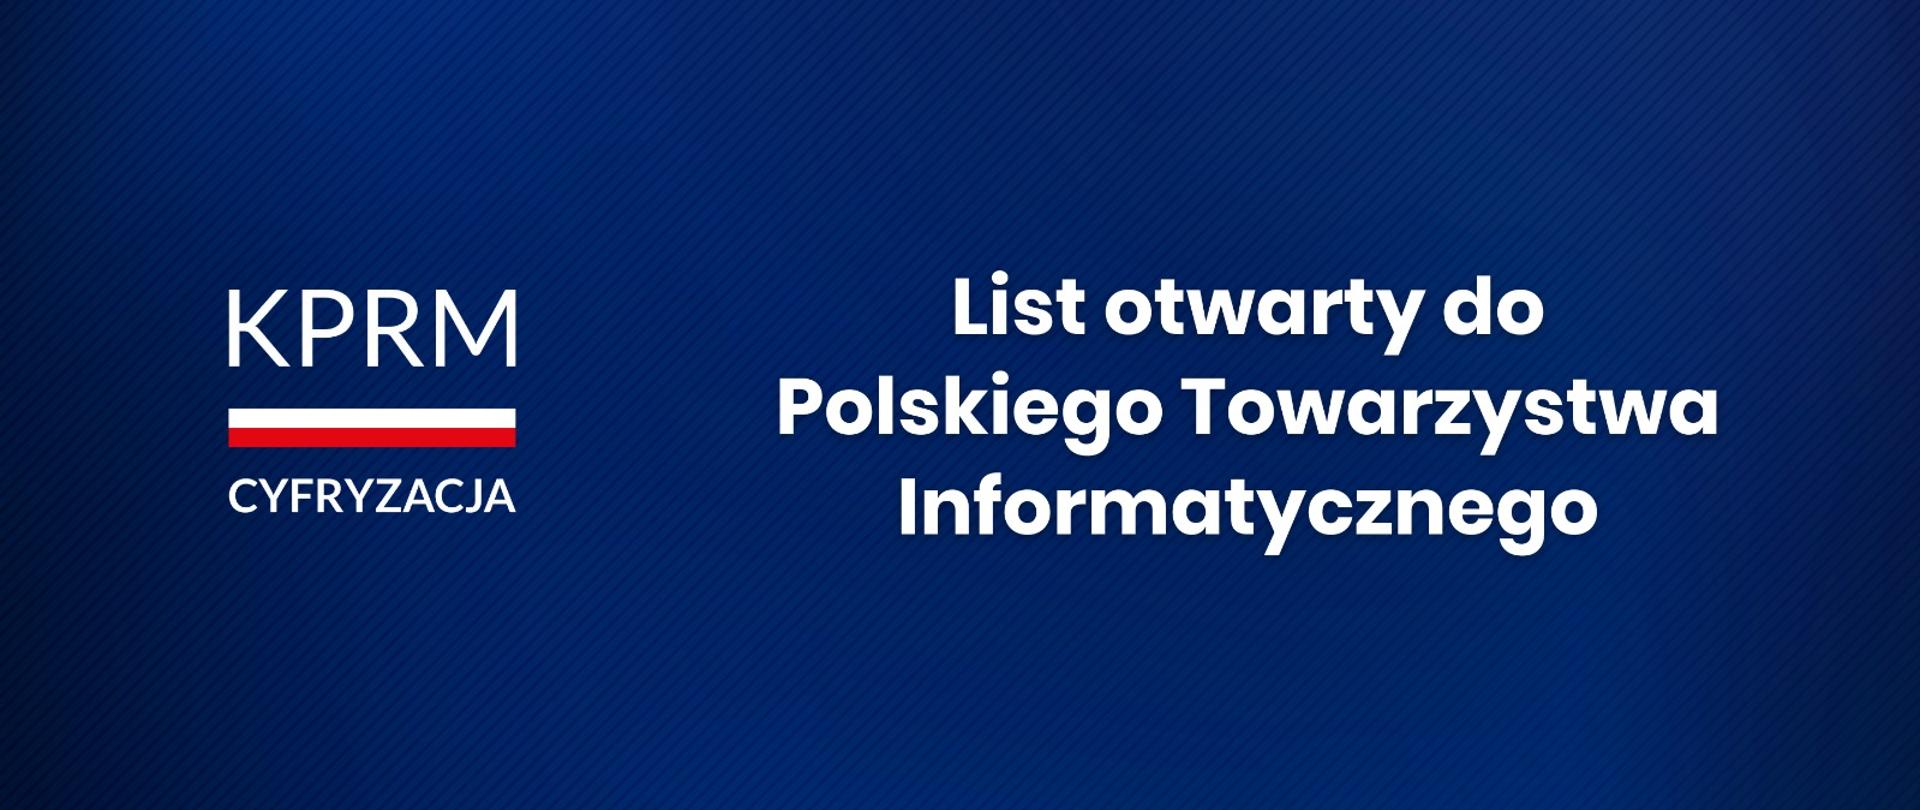 List otwarty do Polskiego Towarzystwa Informatycznego